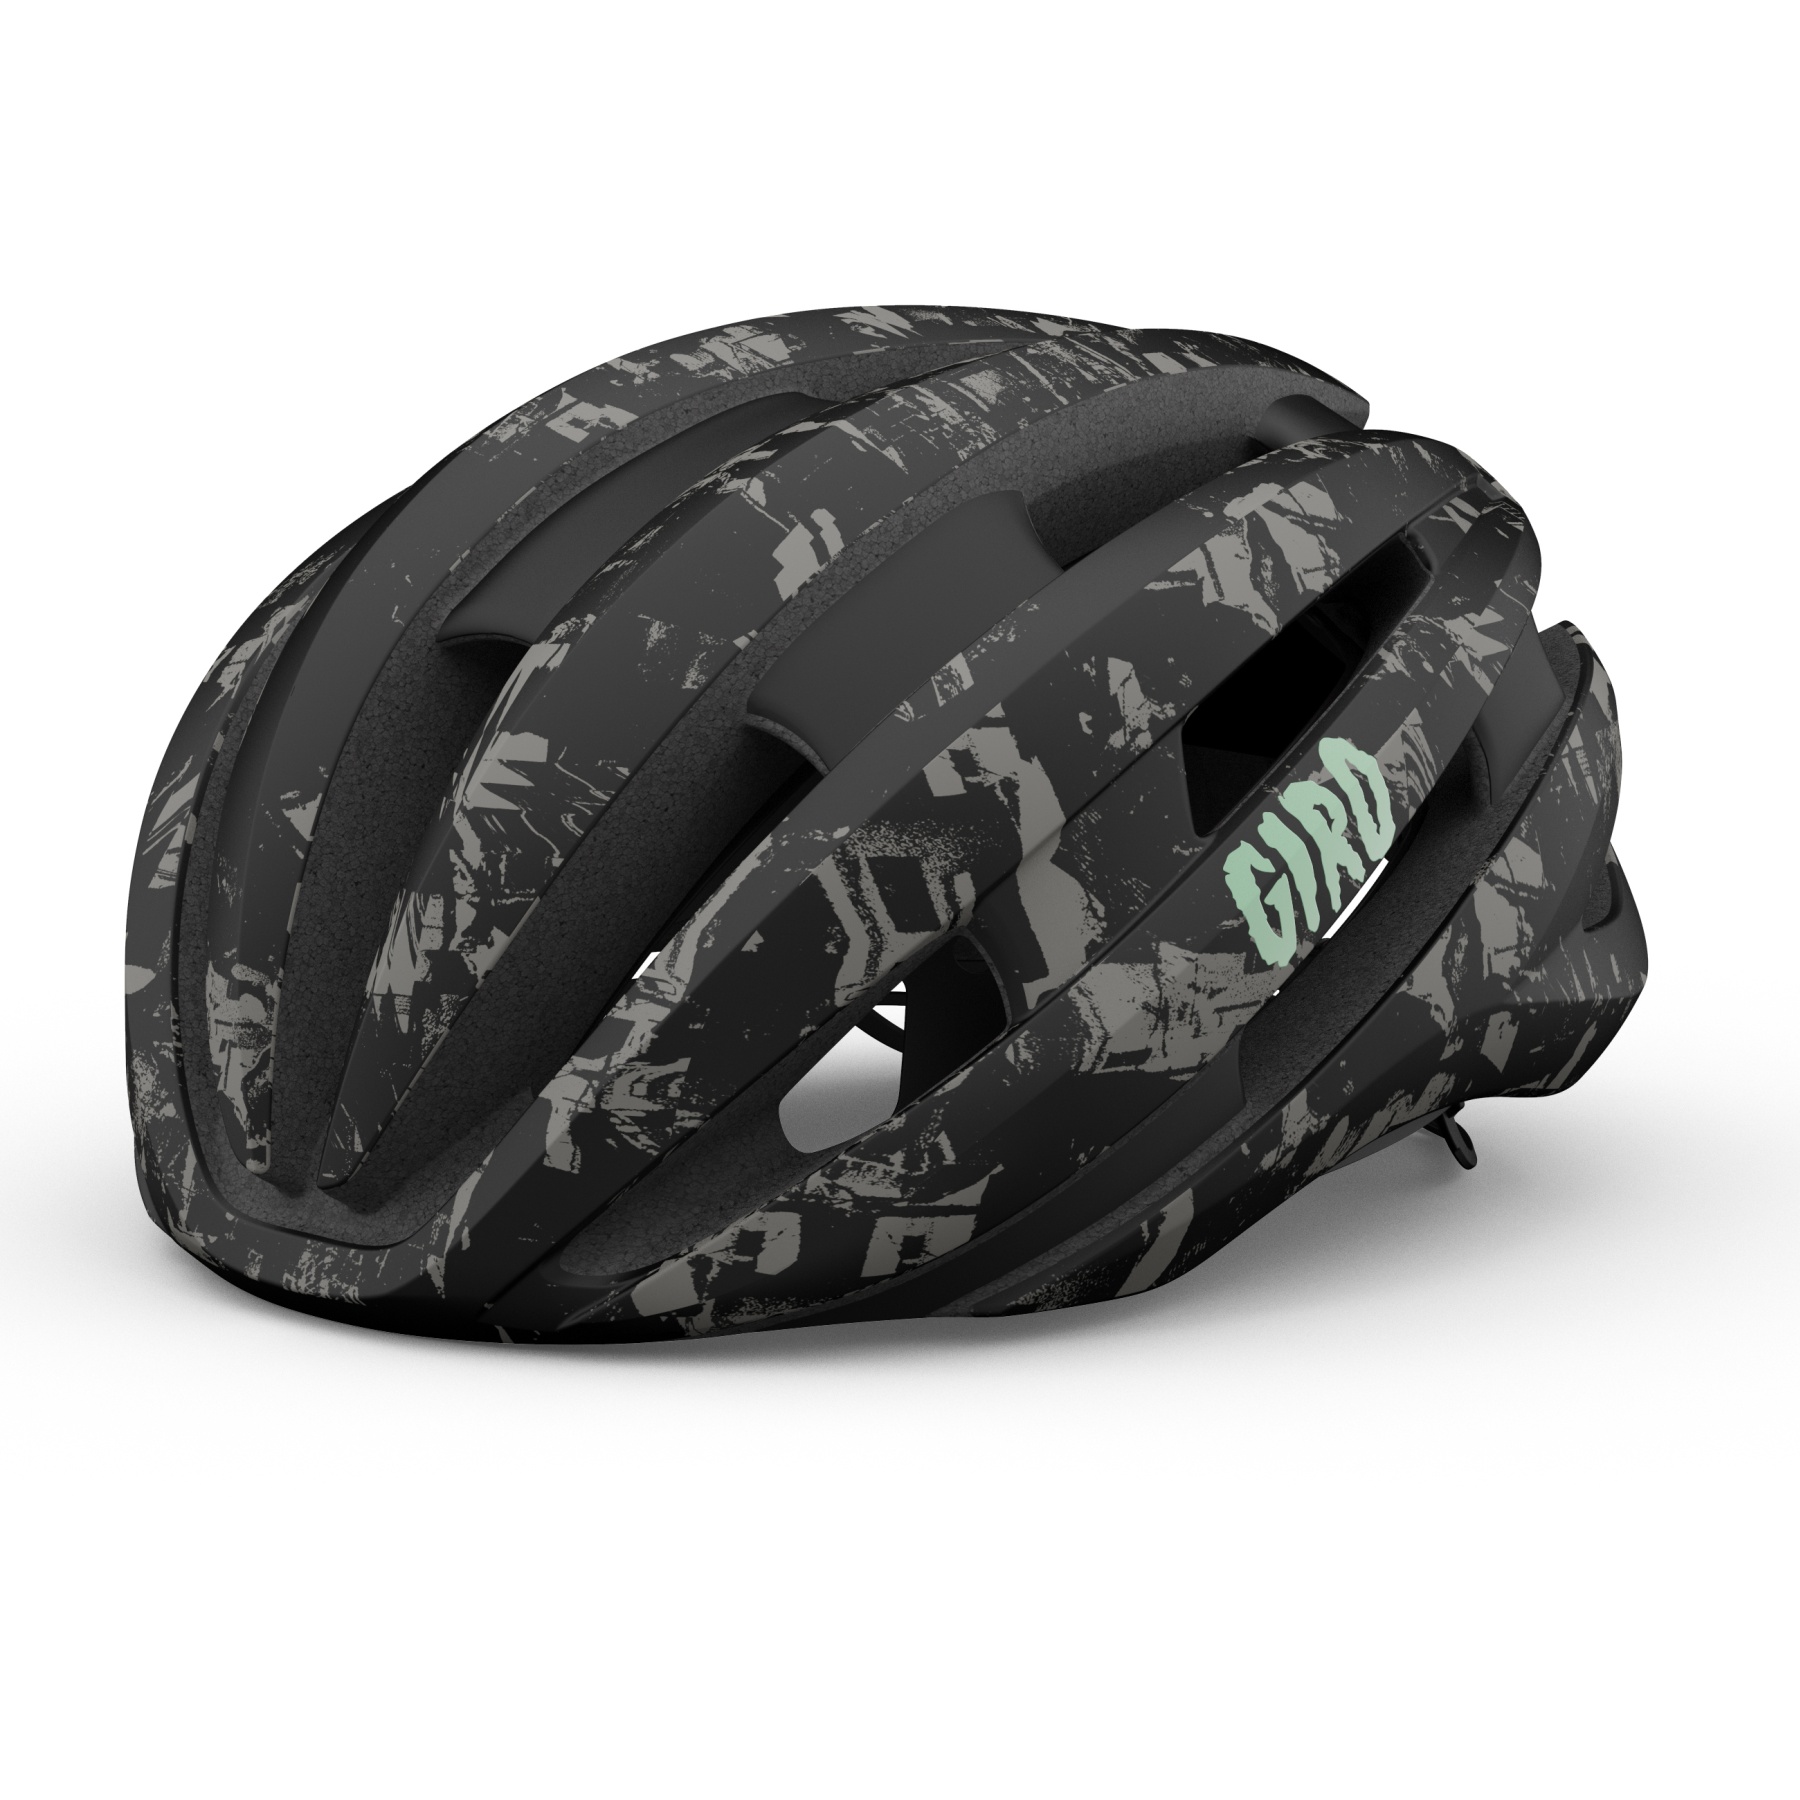 Produktbild von Giro Synthe MIPS II Helm - matte black underground